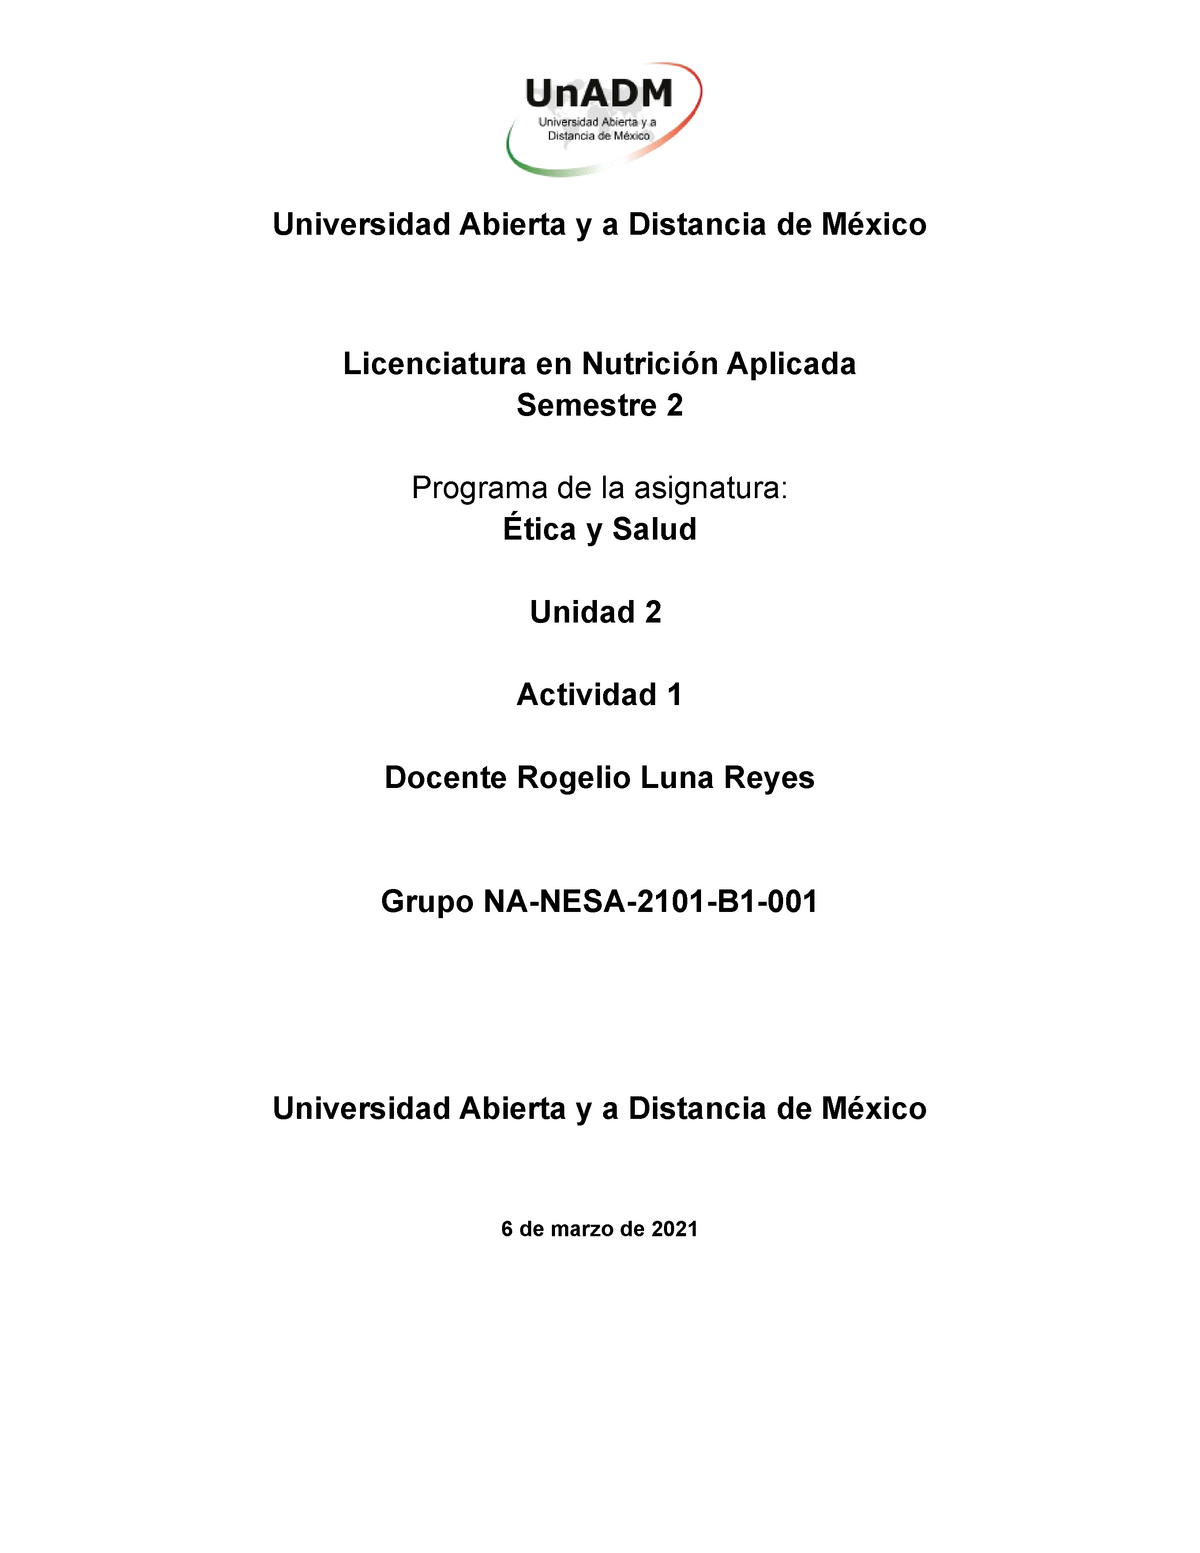 Esa U2 A1 Xyxy Tarea De ética Y Salud Unidad 2 I Universidad Abierta Y A Distancia De México 8555